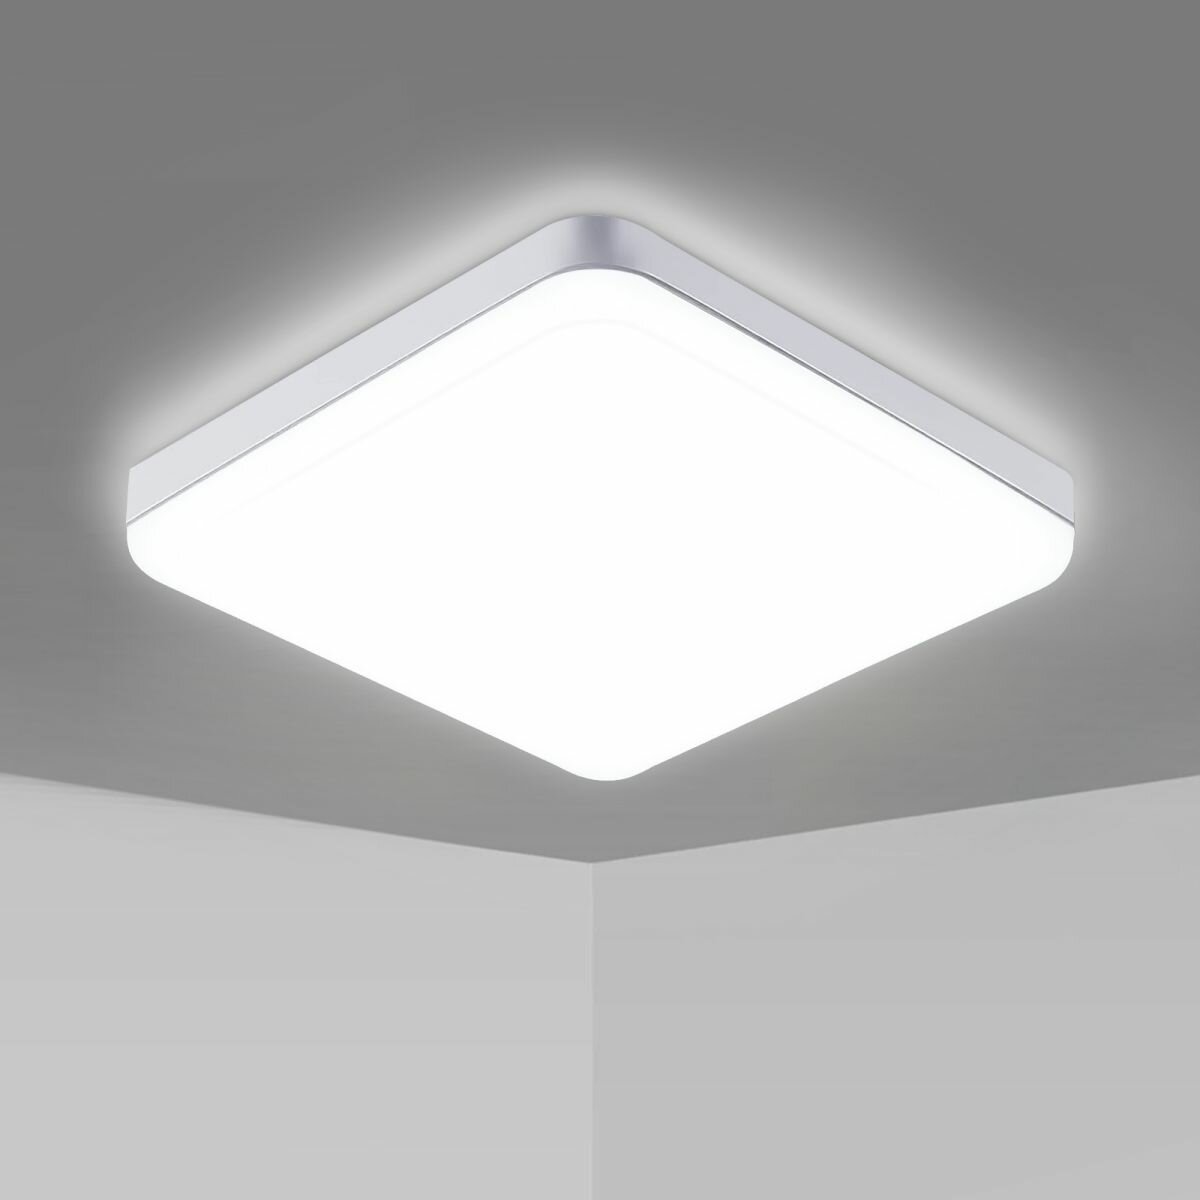 Потолочные лампочки, Riserva, RI309257, 32 Вт, белый свет